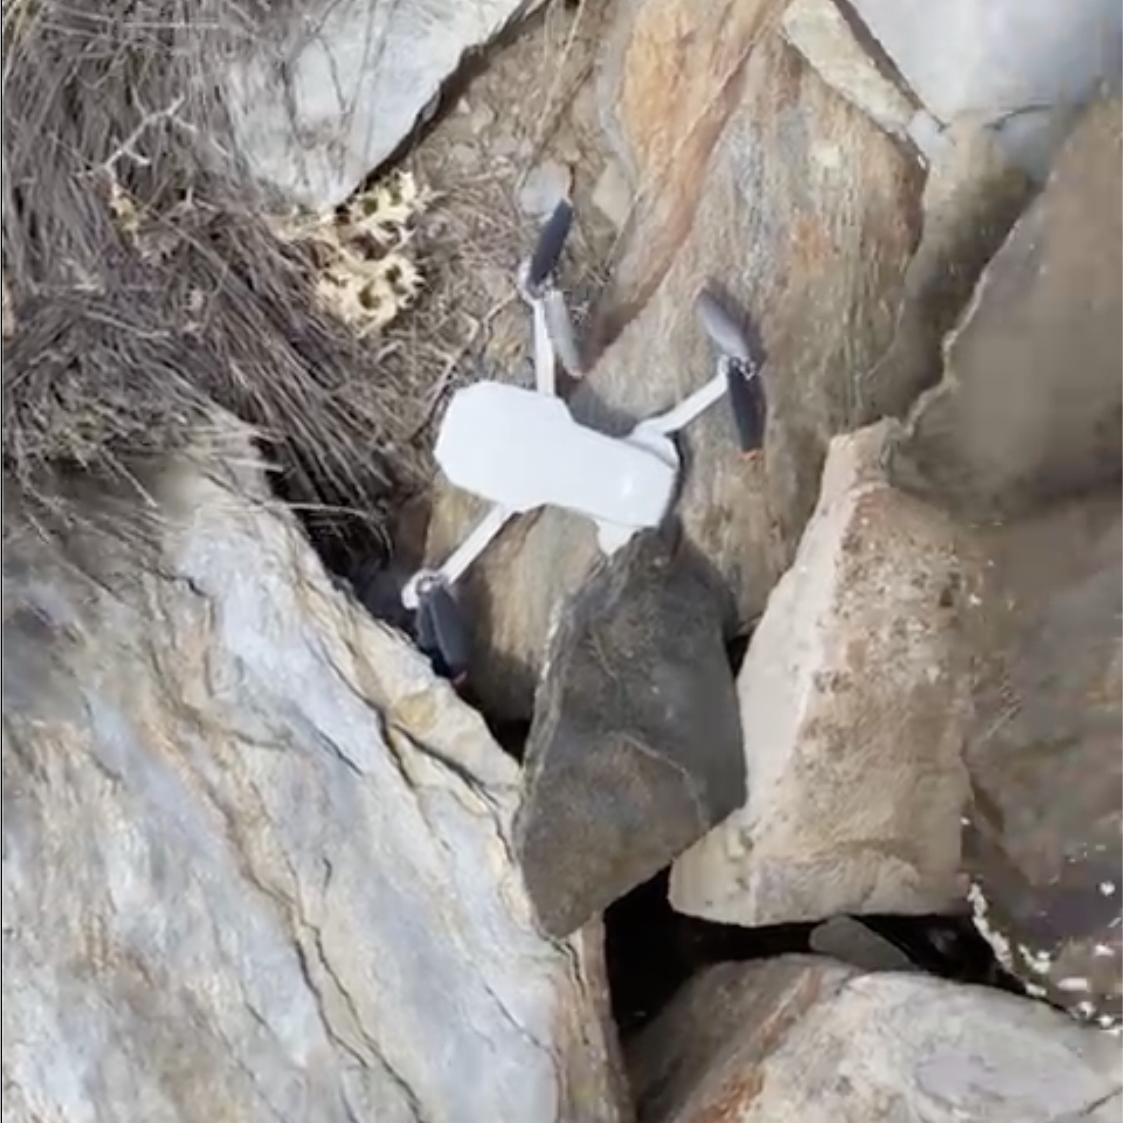 Der Schutzpatron der Videofilmer rettete unsere Drohne, indem er sie auf wundersame Weise vor dem Wind rettete und sie unter (!) diesem Felsen platzierte - vollkommen unversehrt. Vielen Dank dafür!